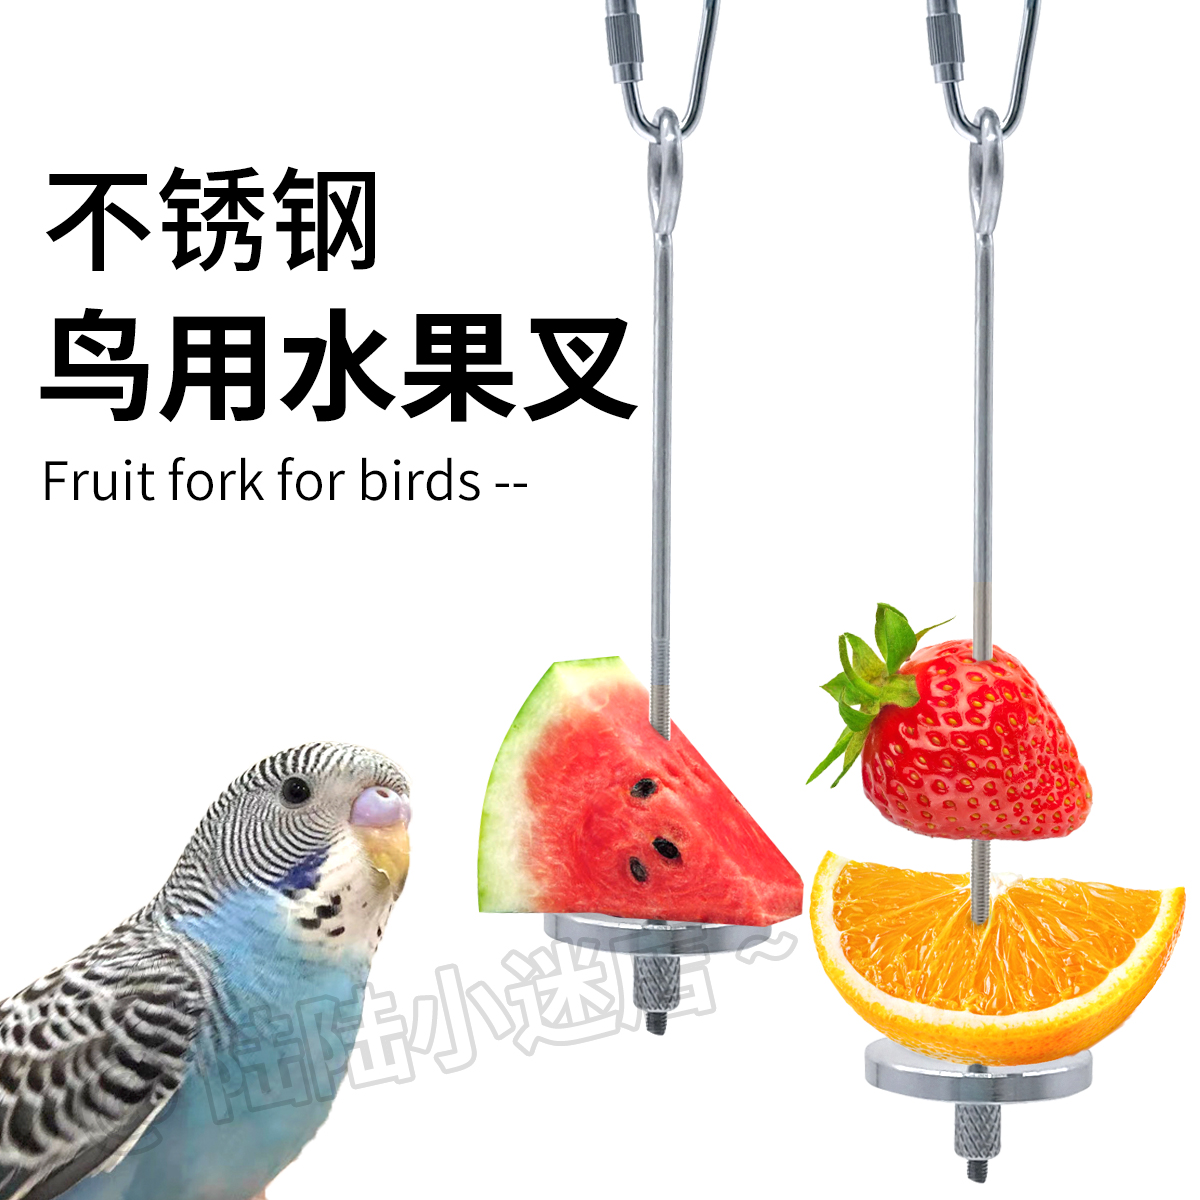 鹦鹉鸟用水果叉不锈钢水果棒虎皮喂食